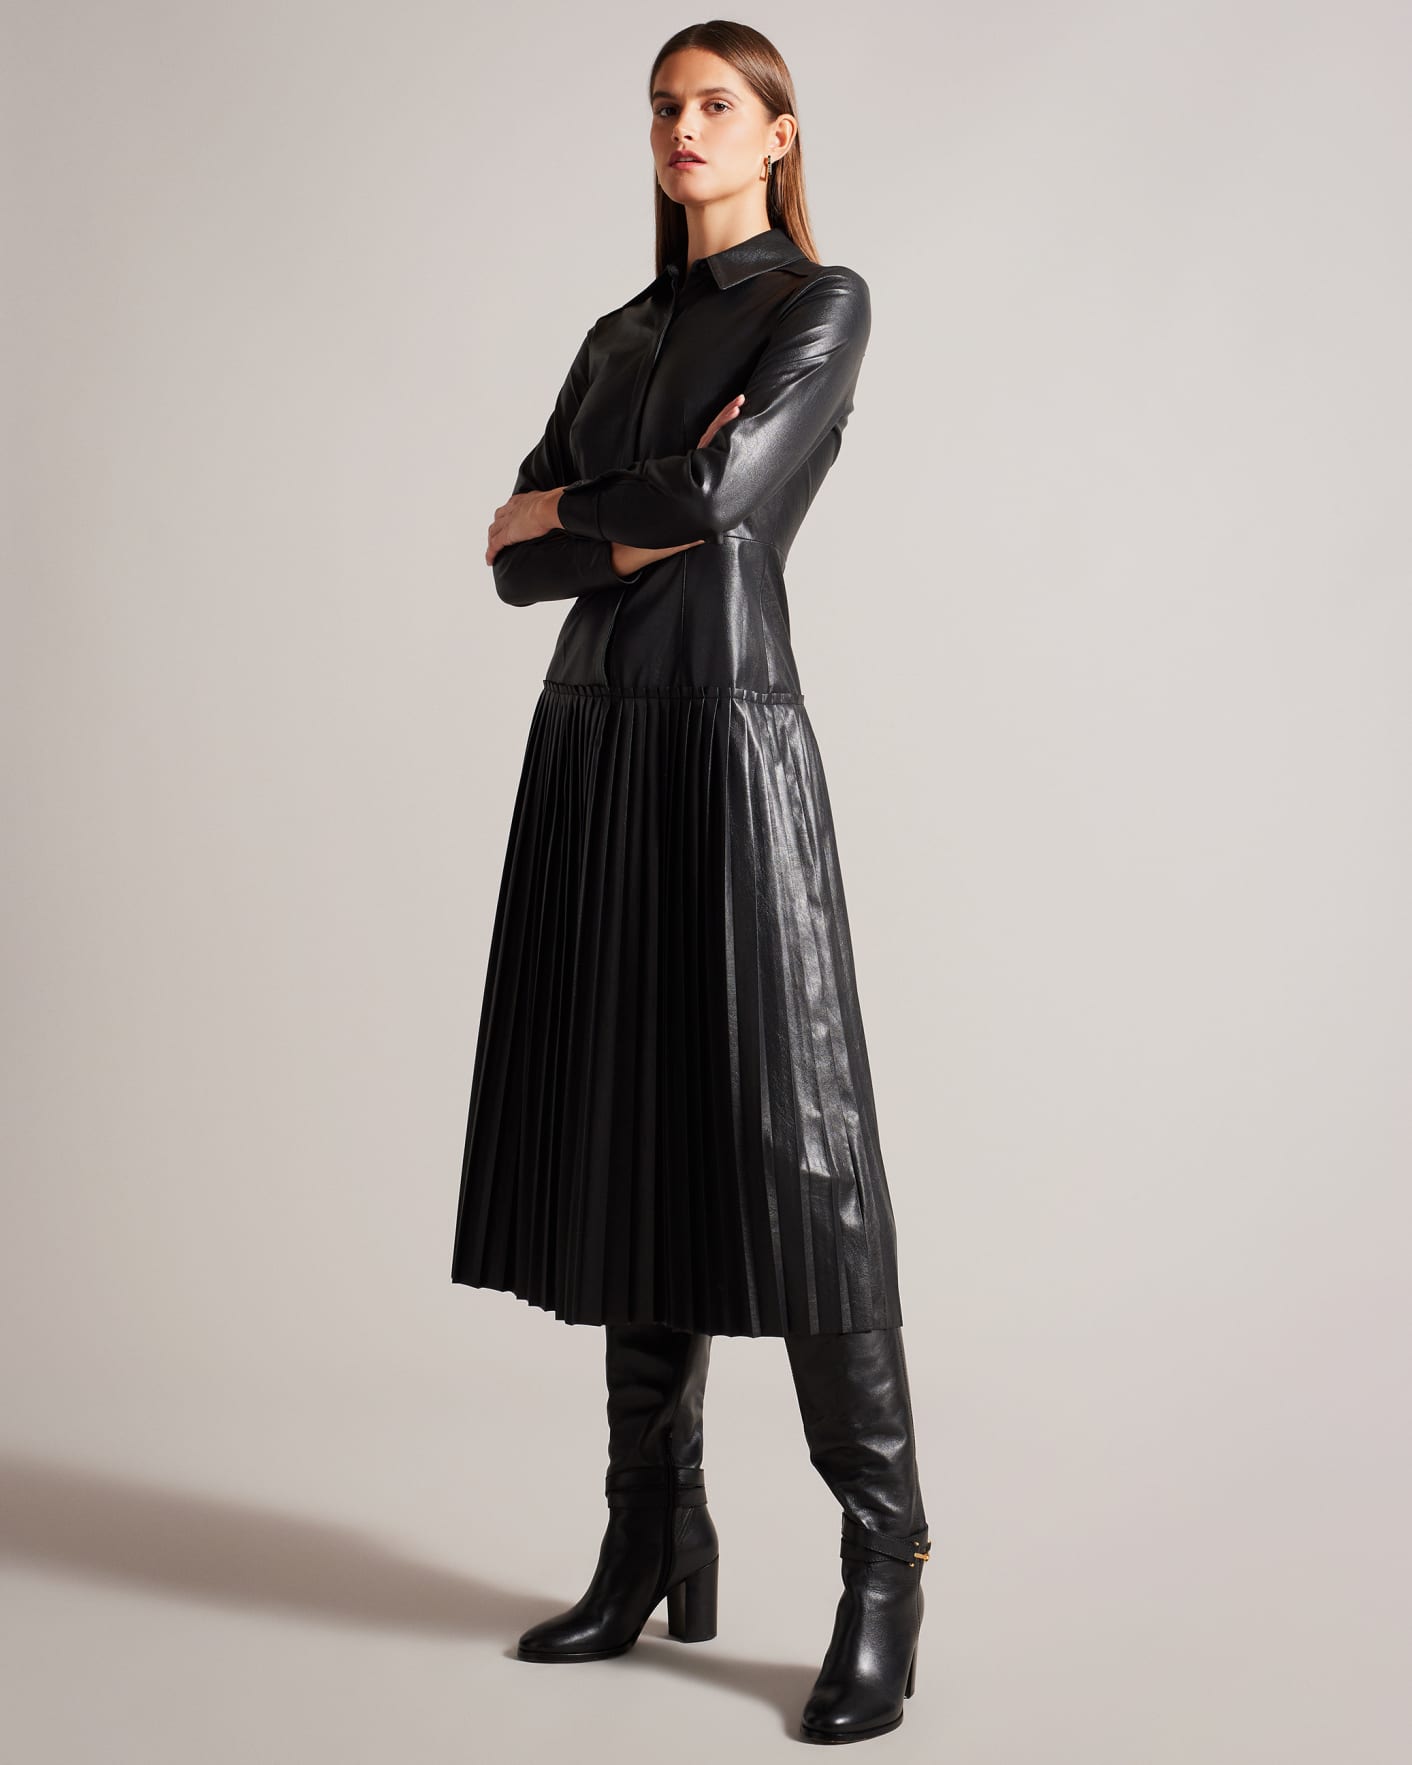 Little Black Faux Leather Dresses - Mrs Profresh